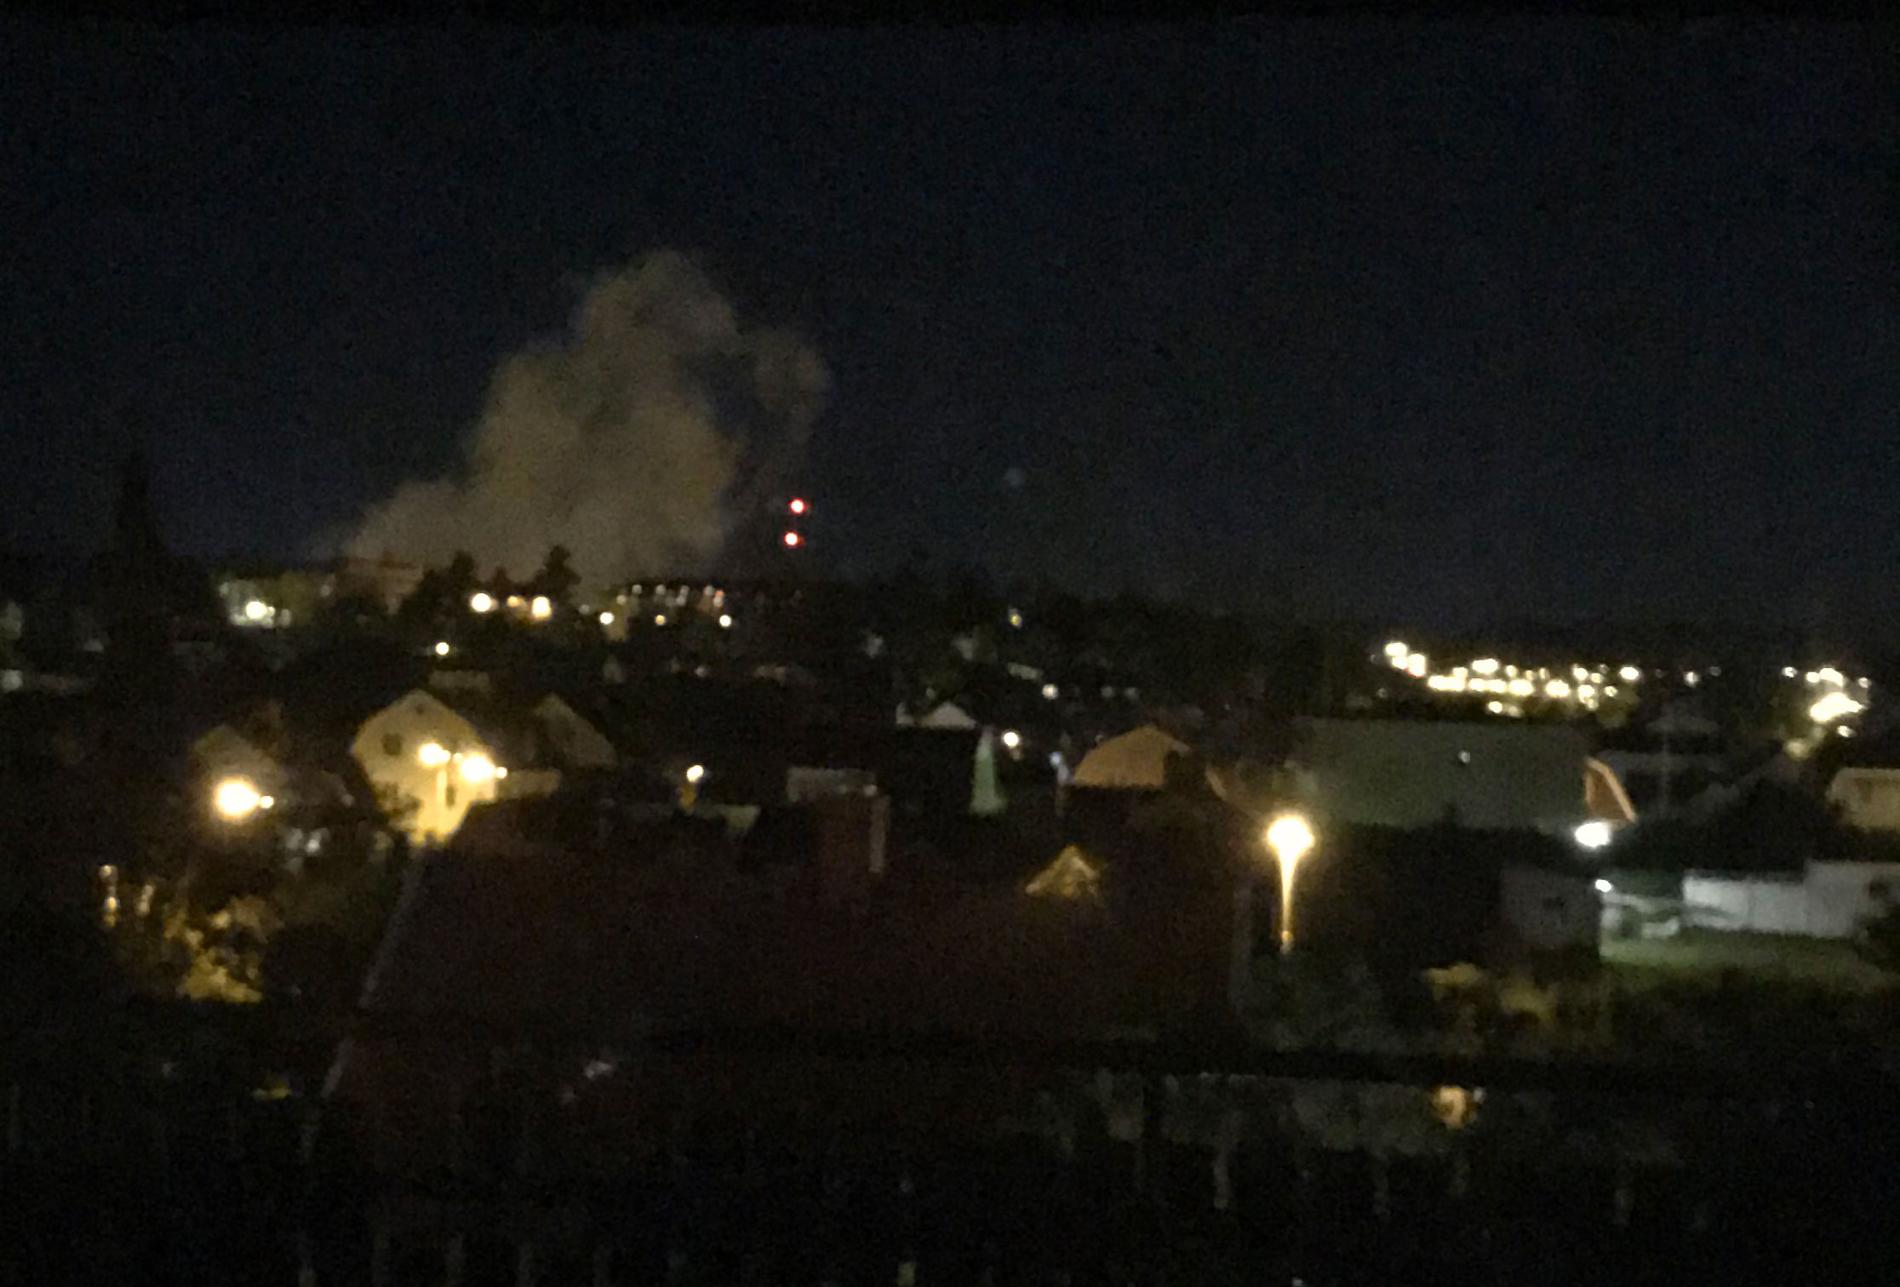 Ett rökmoln syntes lång väg efter att en detonation hörts i Linköping.